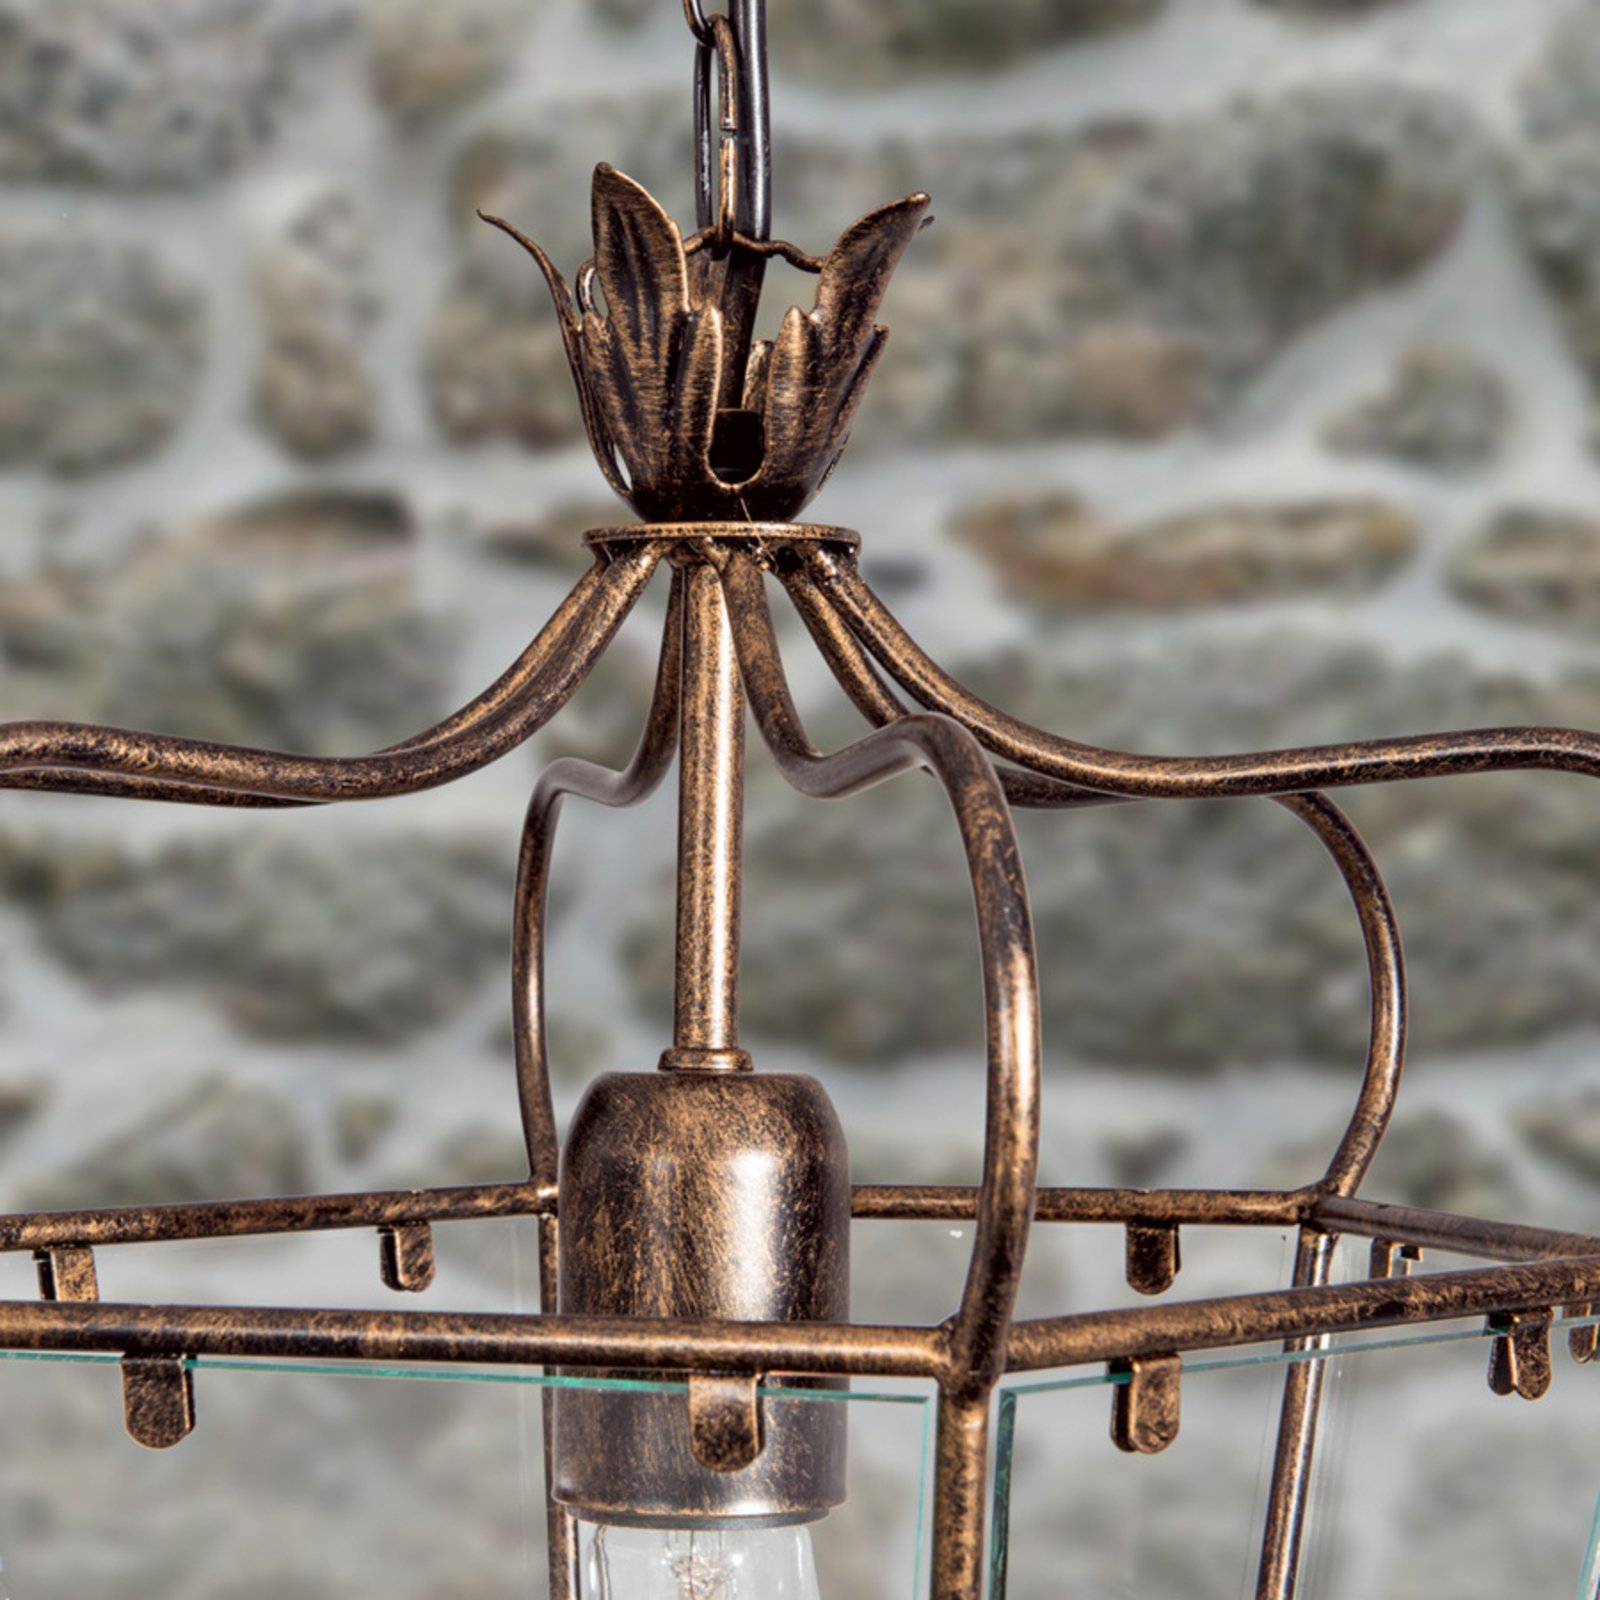 Manto viseća svjetiljka u izgledu lampiona, 1 žarulja.